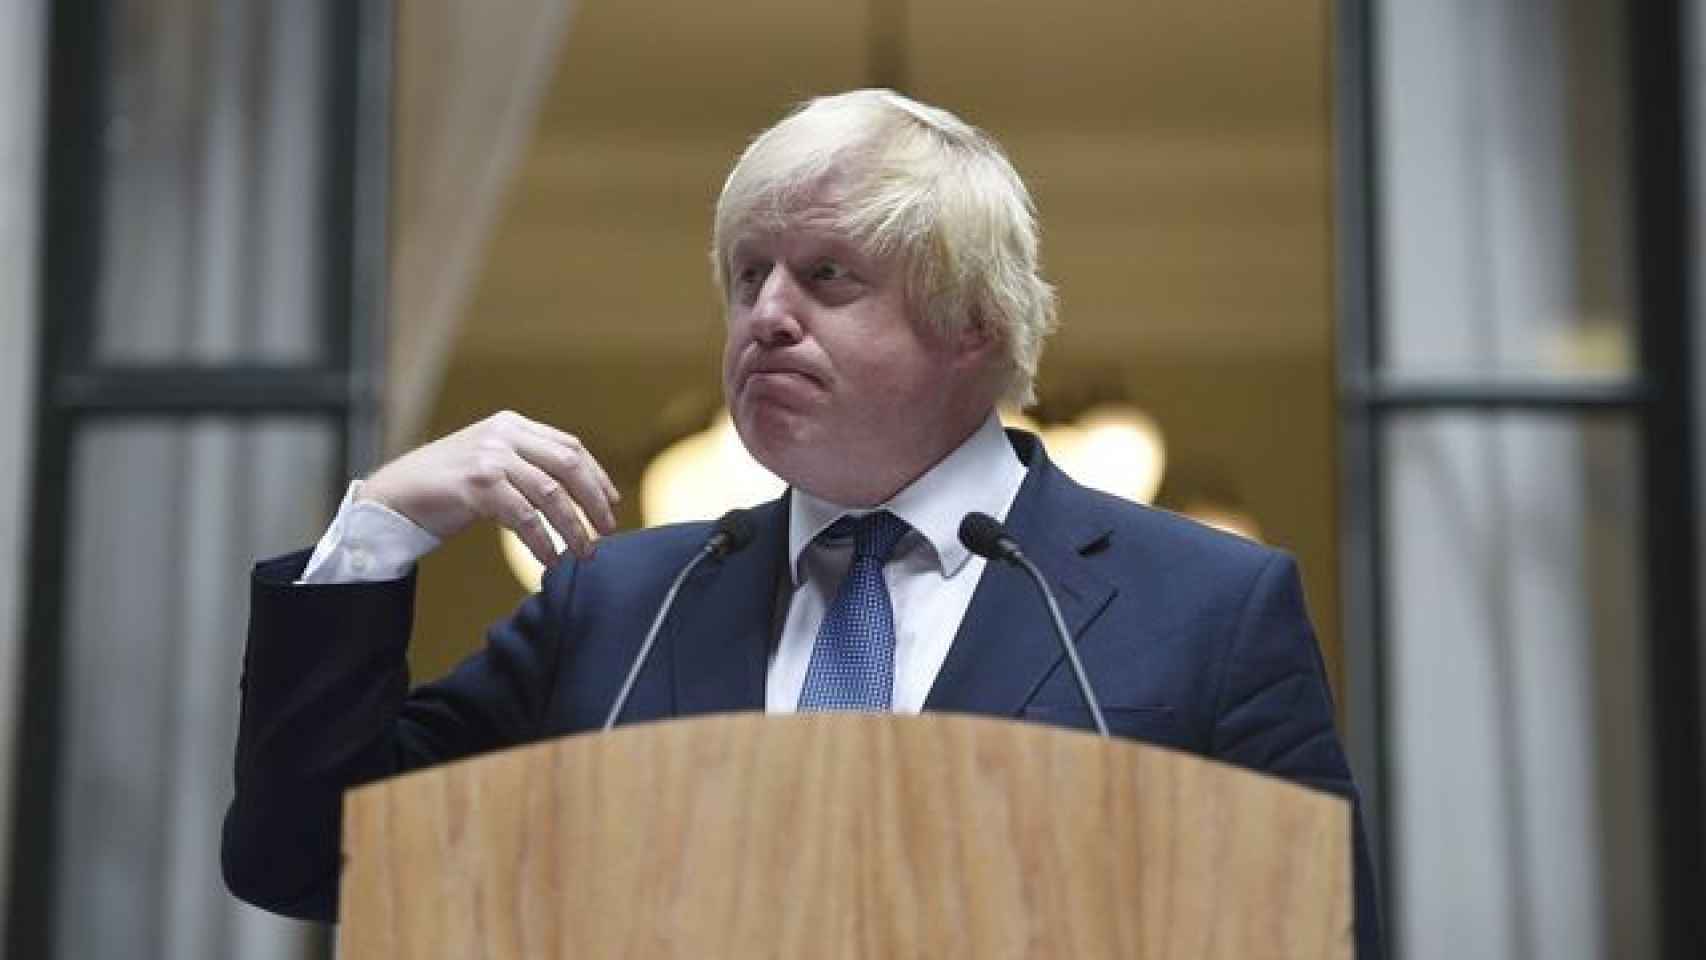 Boris Johnson en una comparecencia de prensa.